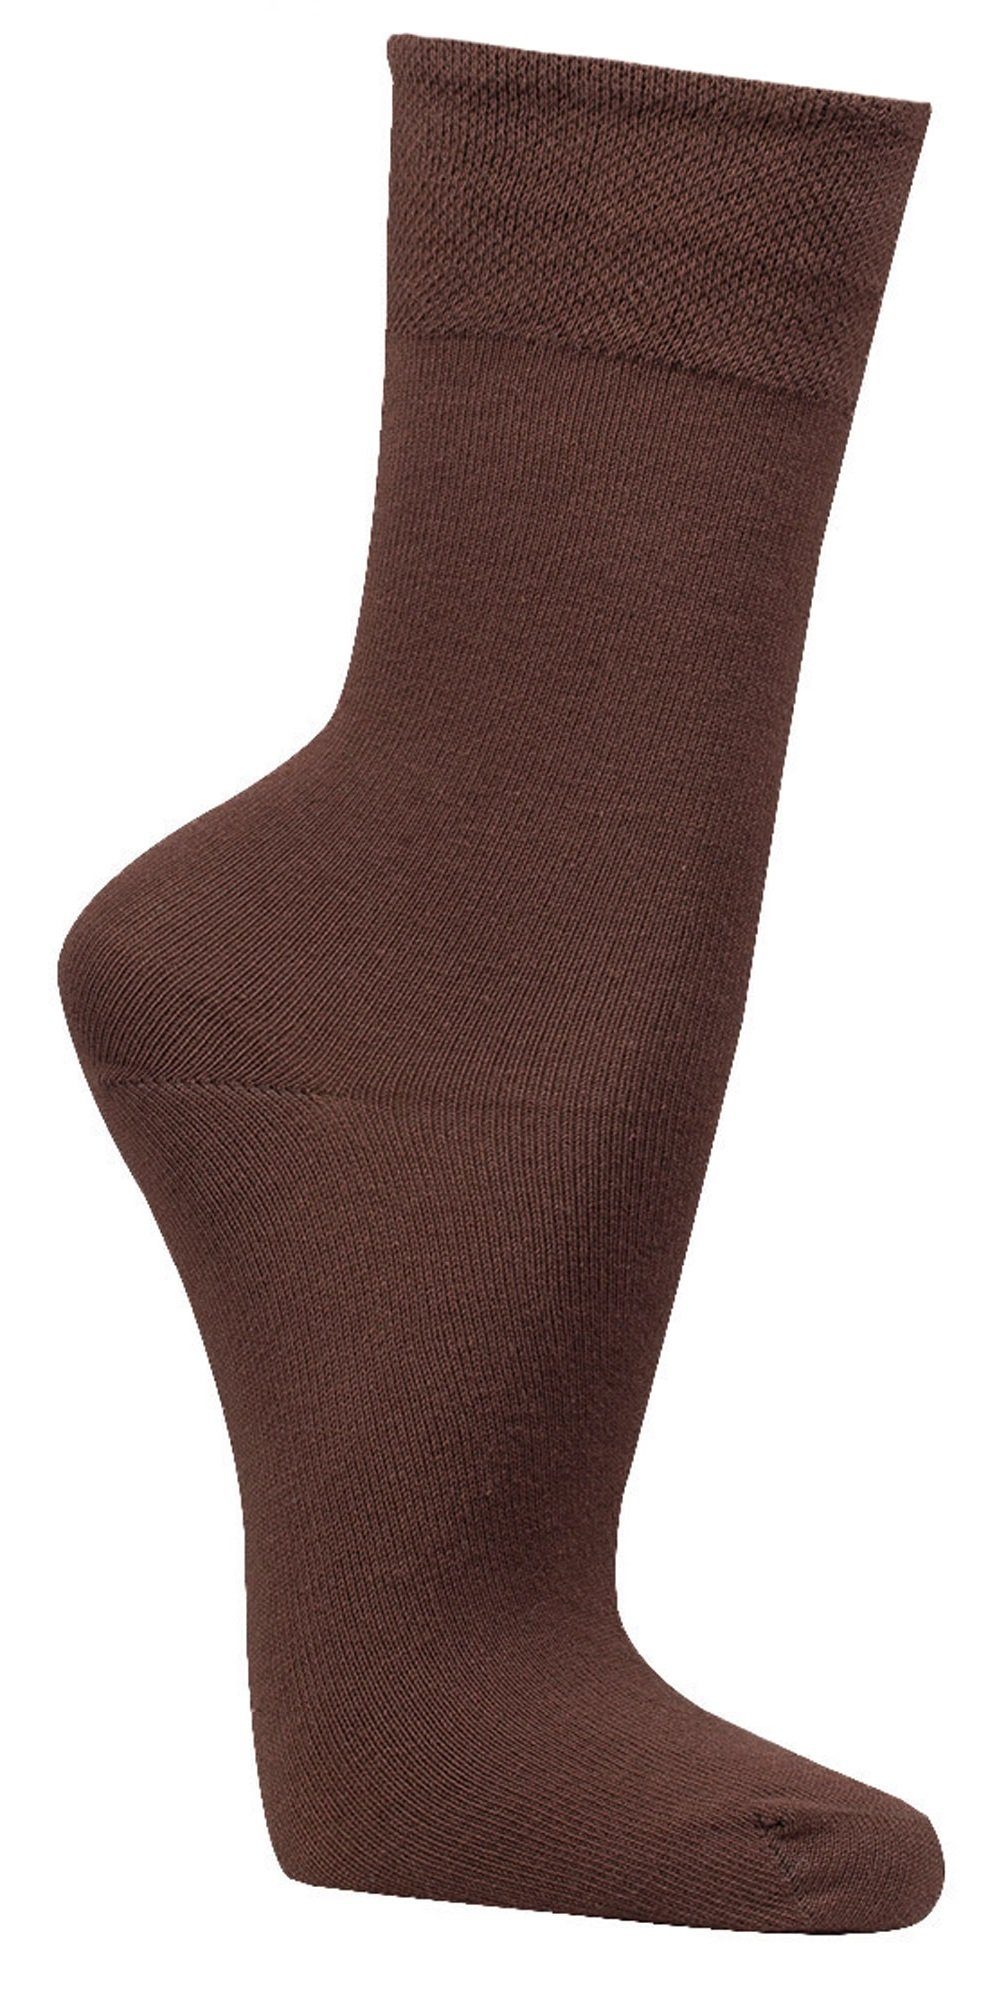 FussFreunde Basicsocken 6 Komfort Baumwoll-Socken mit Piqué-Bund breitem Dunkelbraun Paar